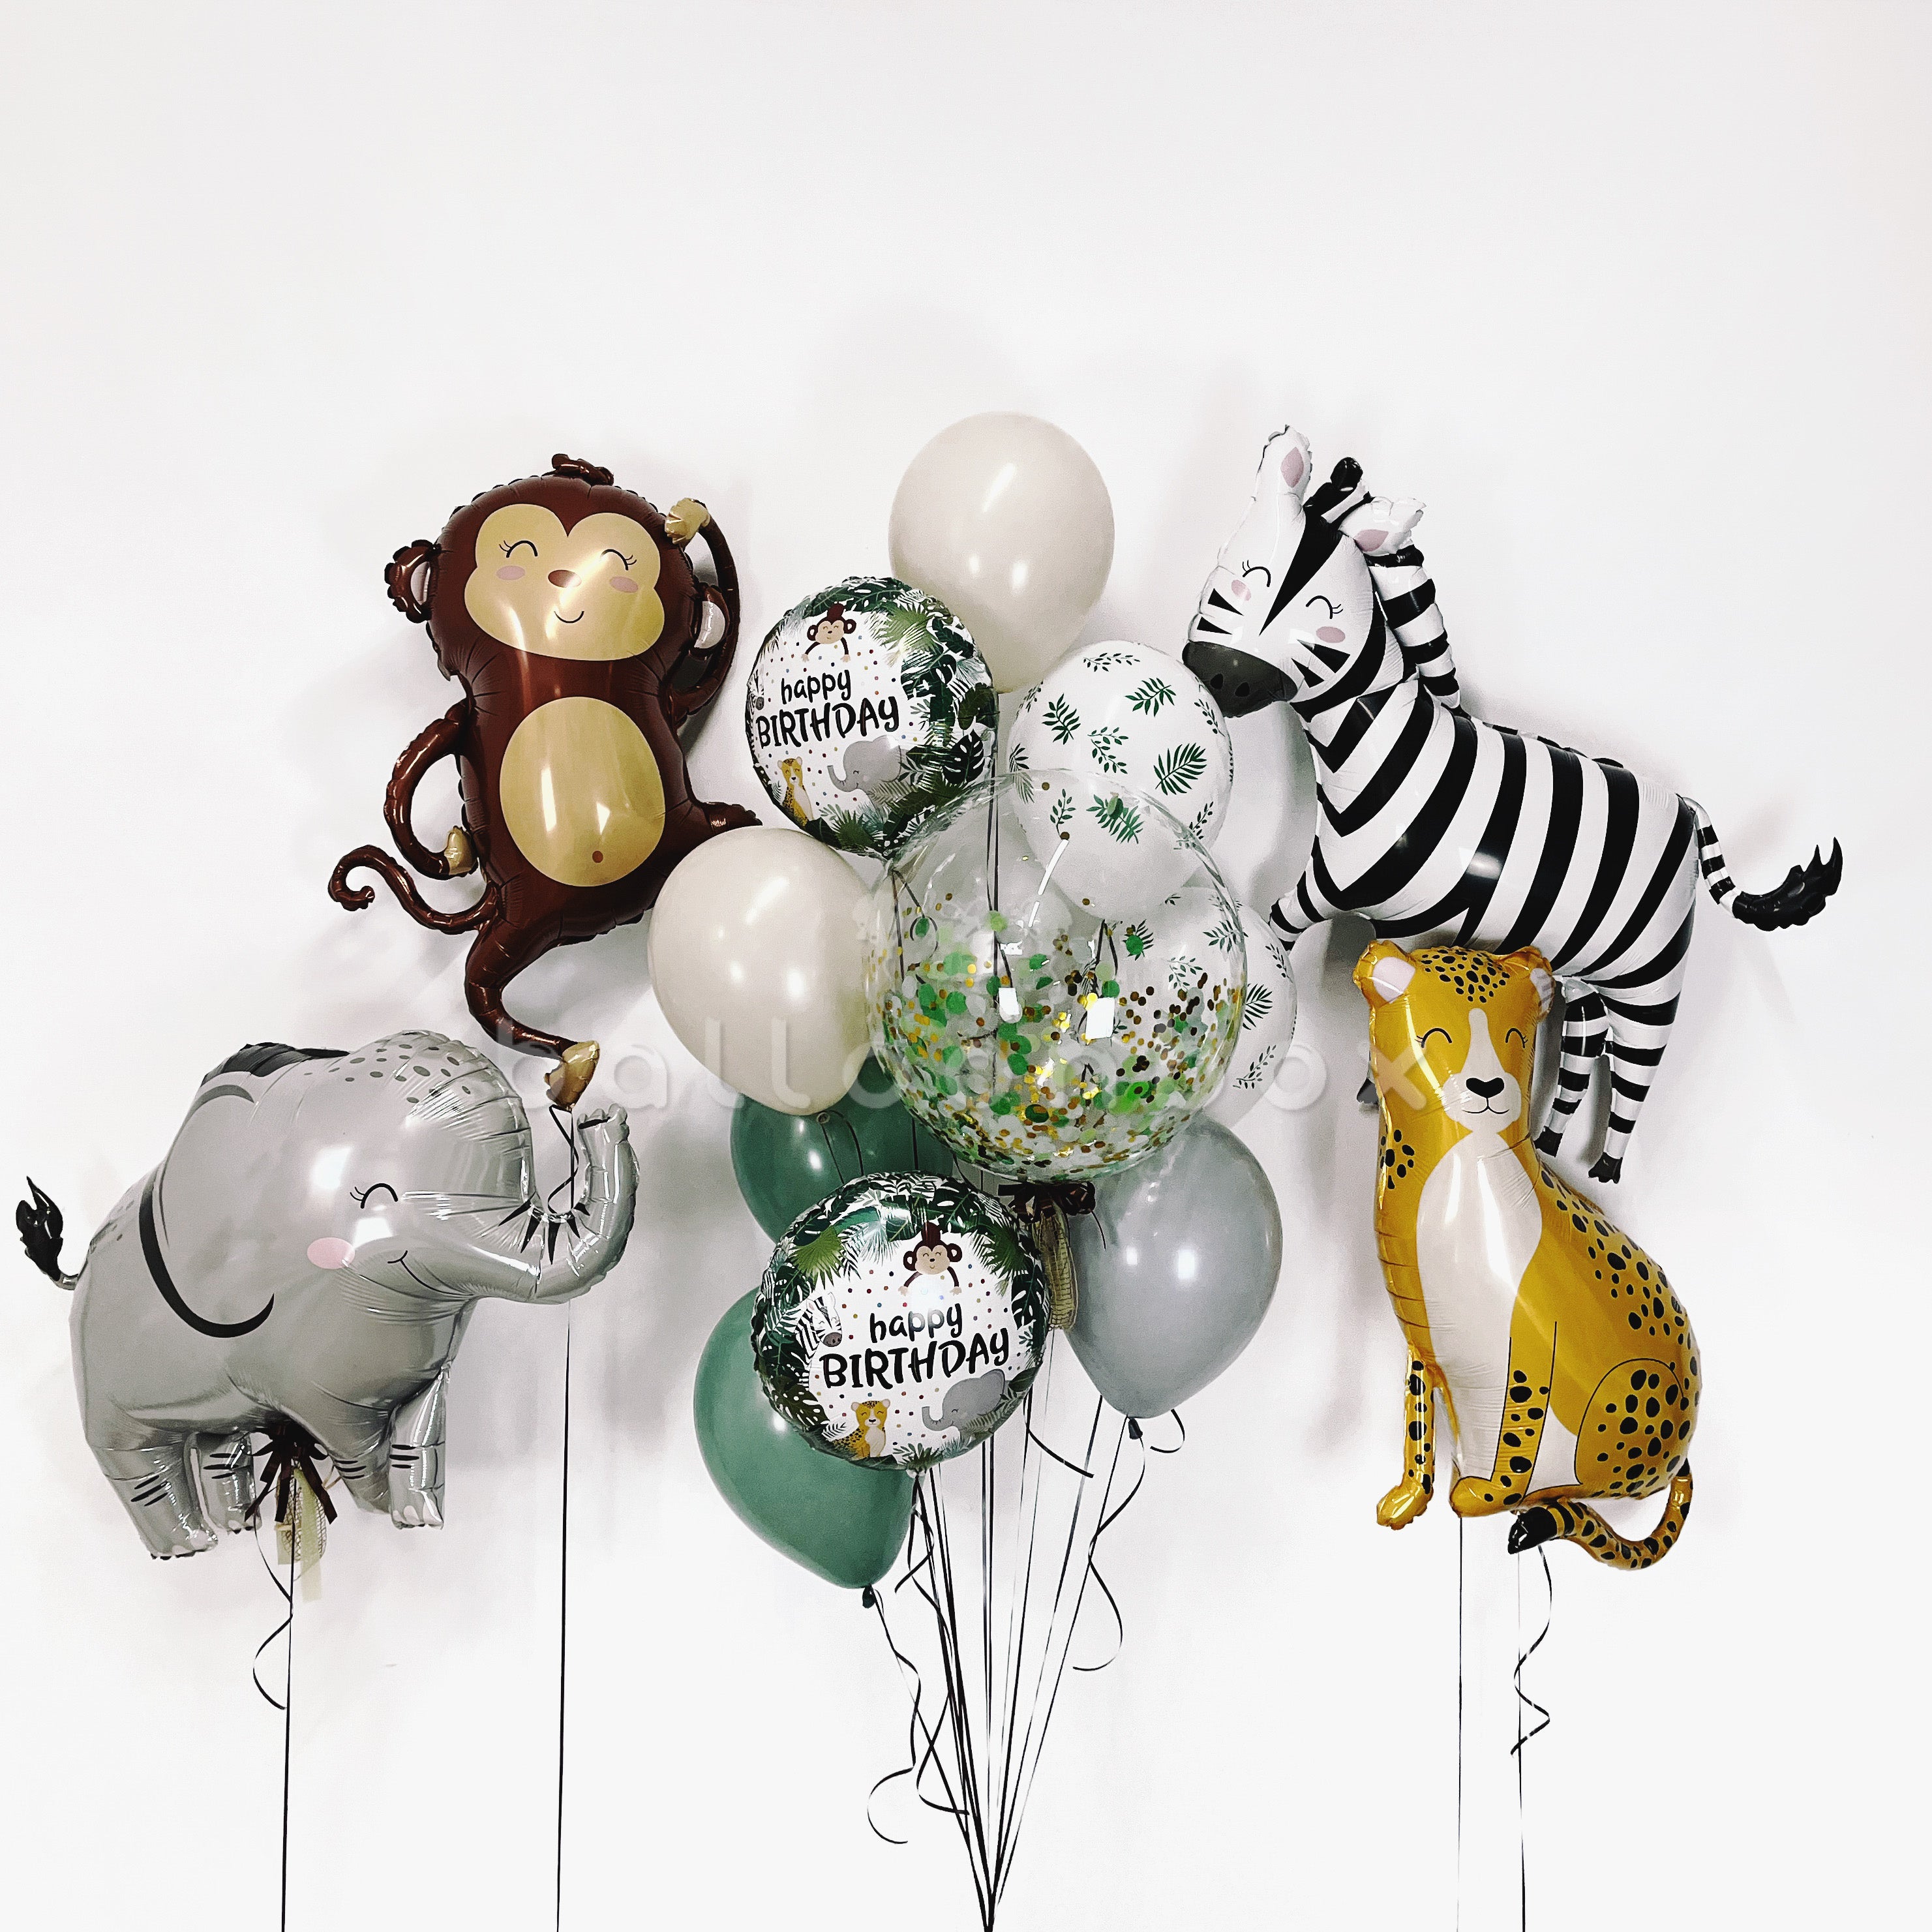 Regalar globos de animales de la selva – Balloon Box